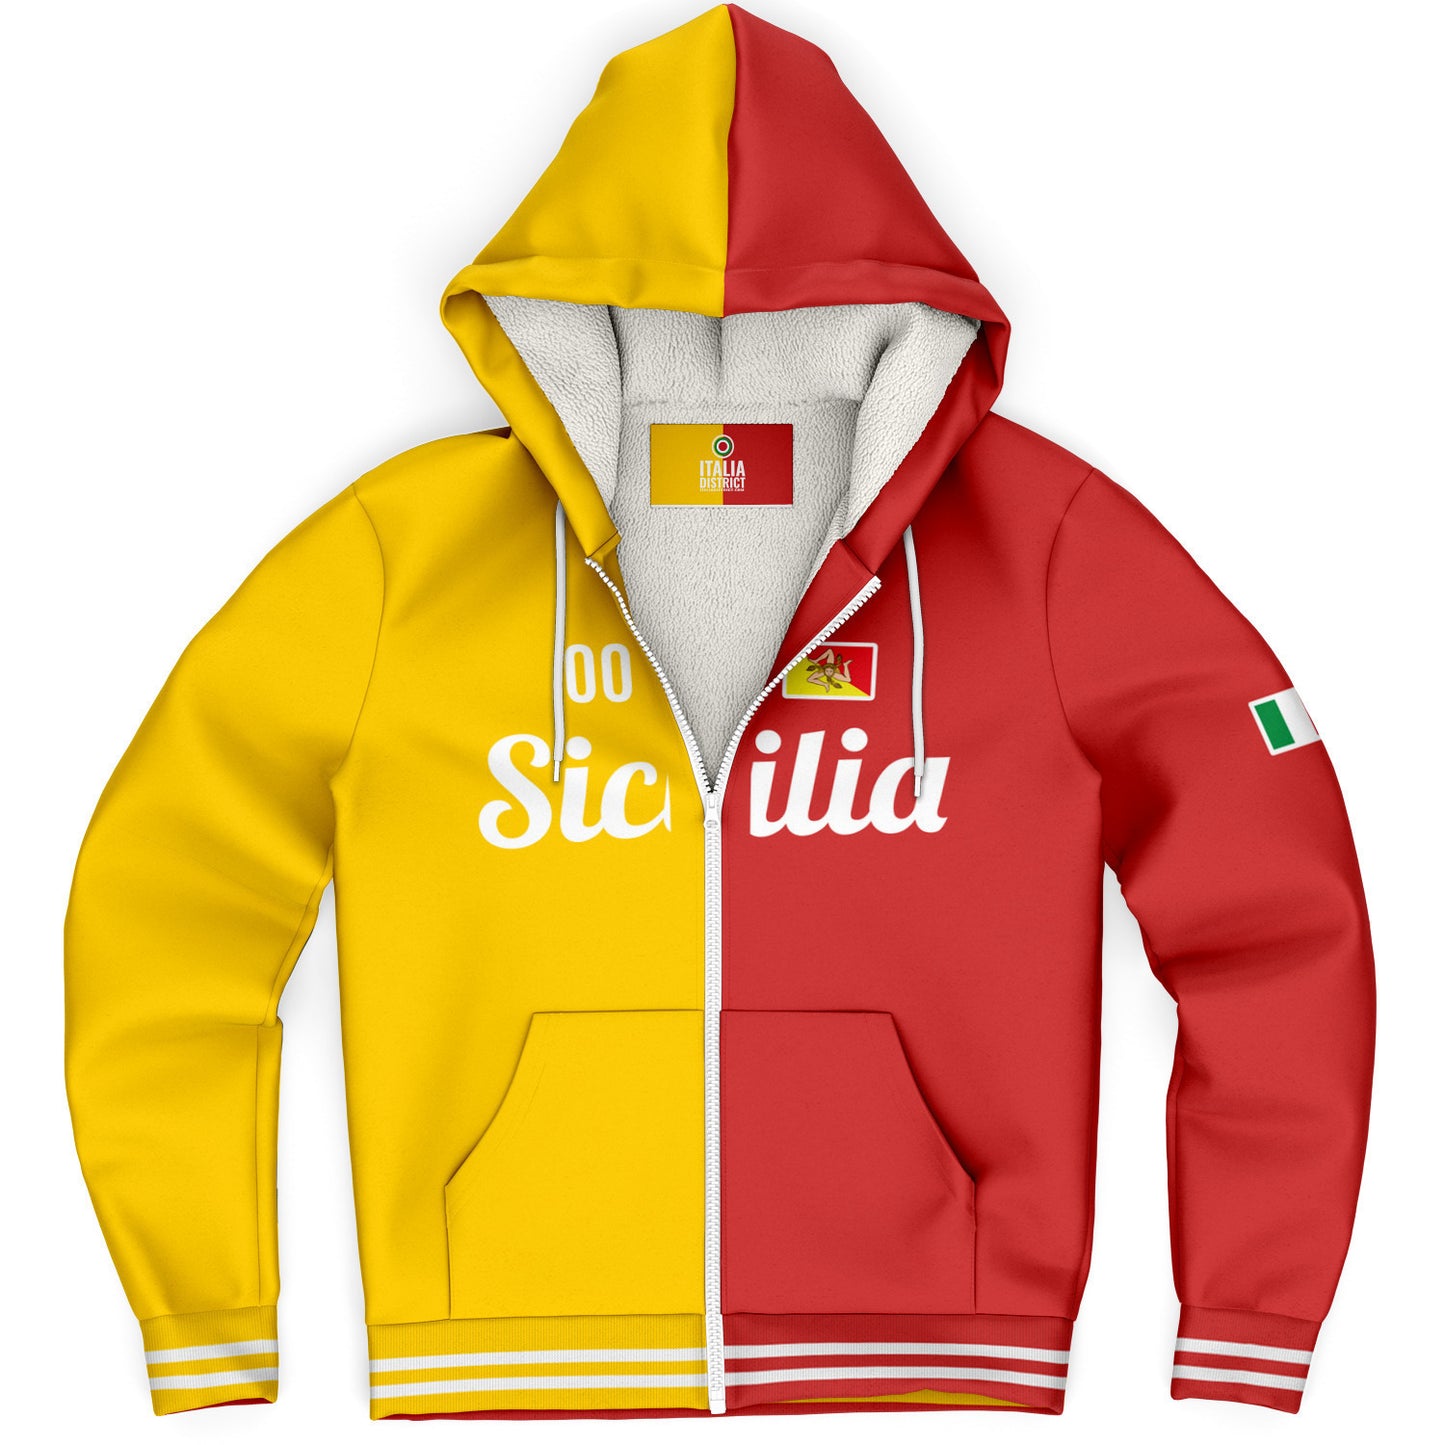 Sicily Microfleece Zip-Up Hoodie - Custom Name + Number